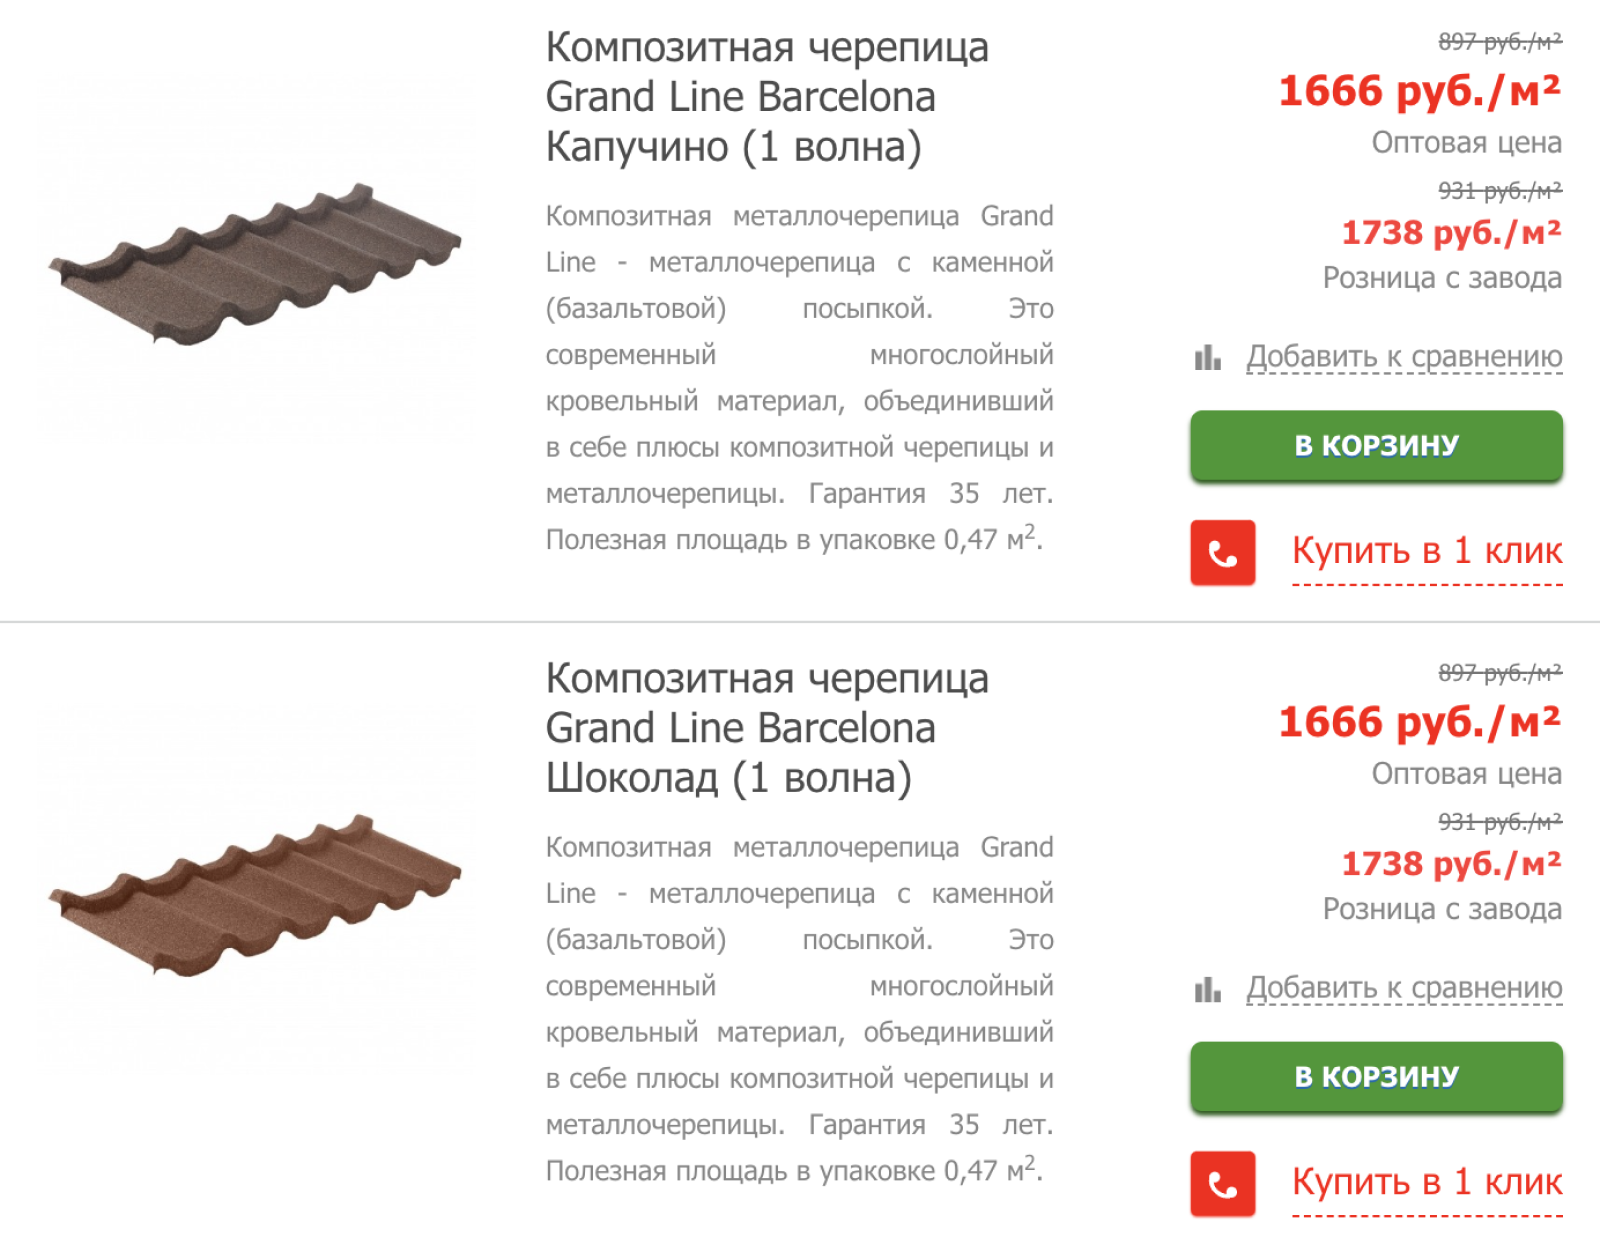 Композитная черепица продается модулями, что значительно ускоряет монтаж. Источник: st-par.ru